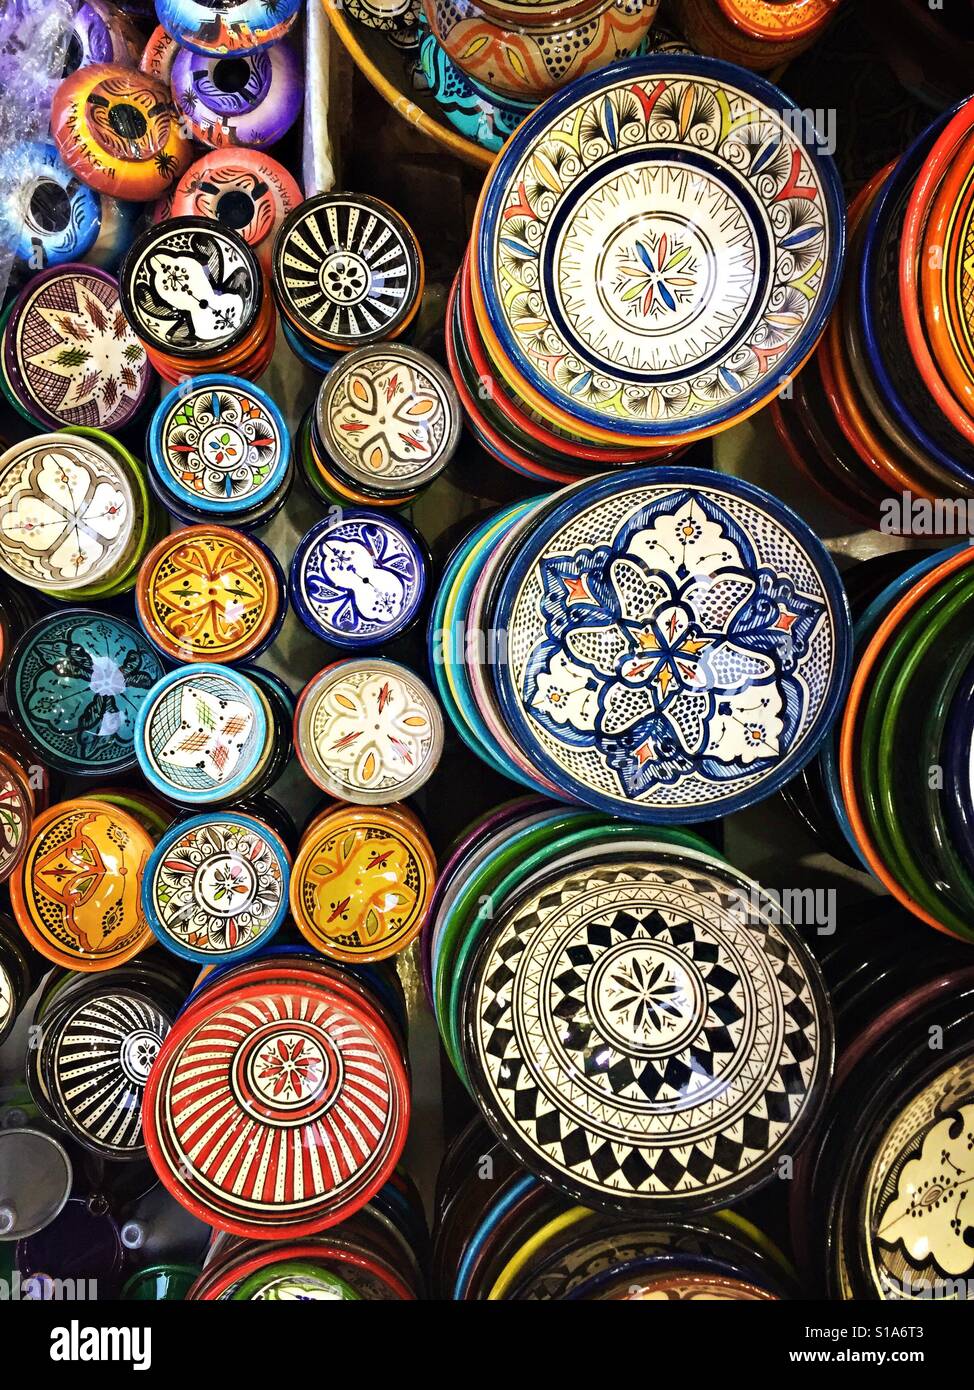 Dipinte a mano e ciotole per la vendita sono visibili su un mercato in stallo in Marrakech, Marocco. Foto Stock